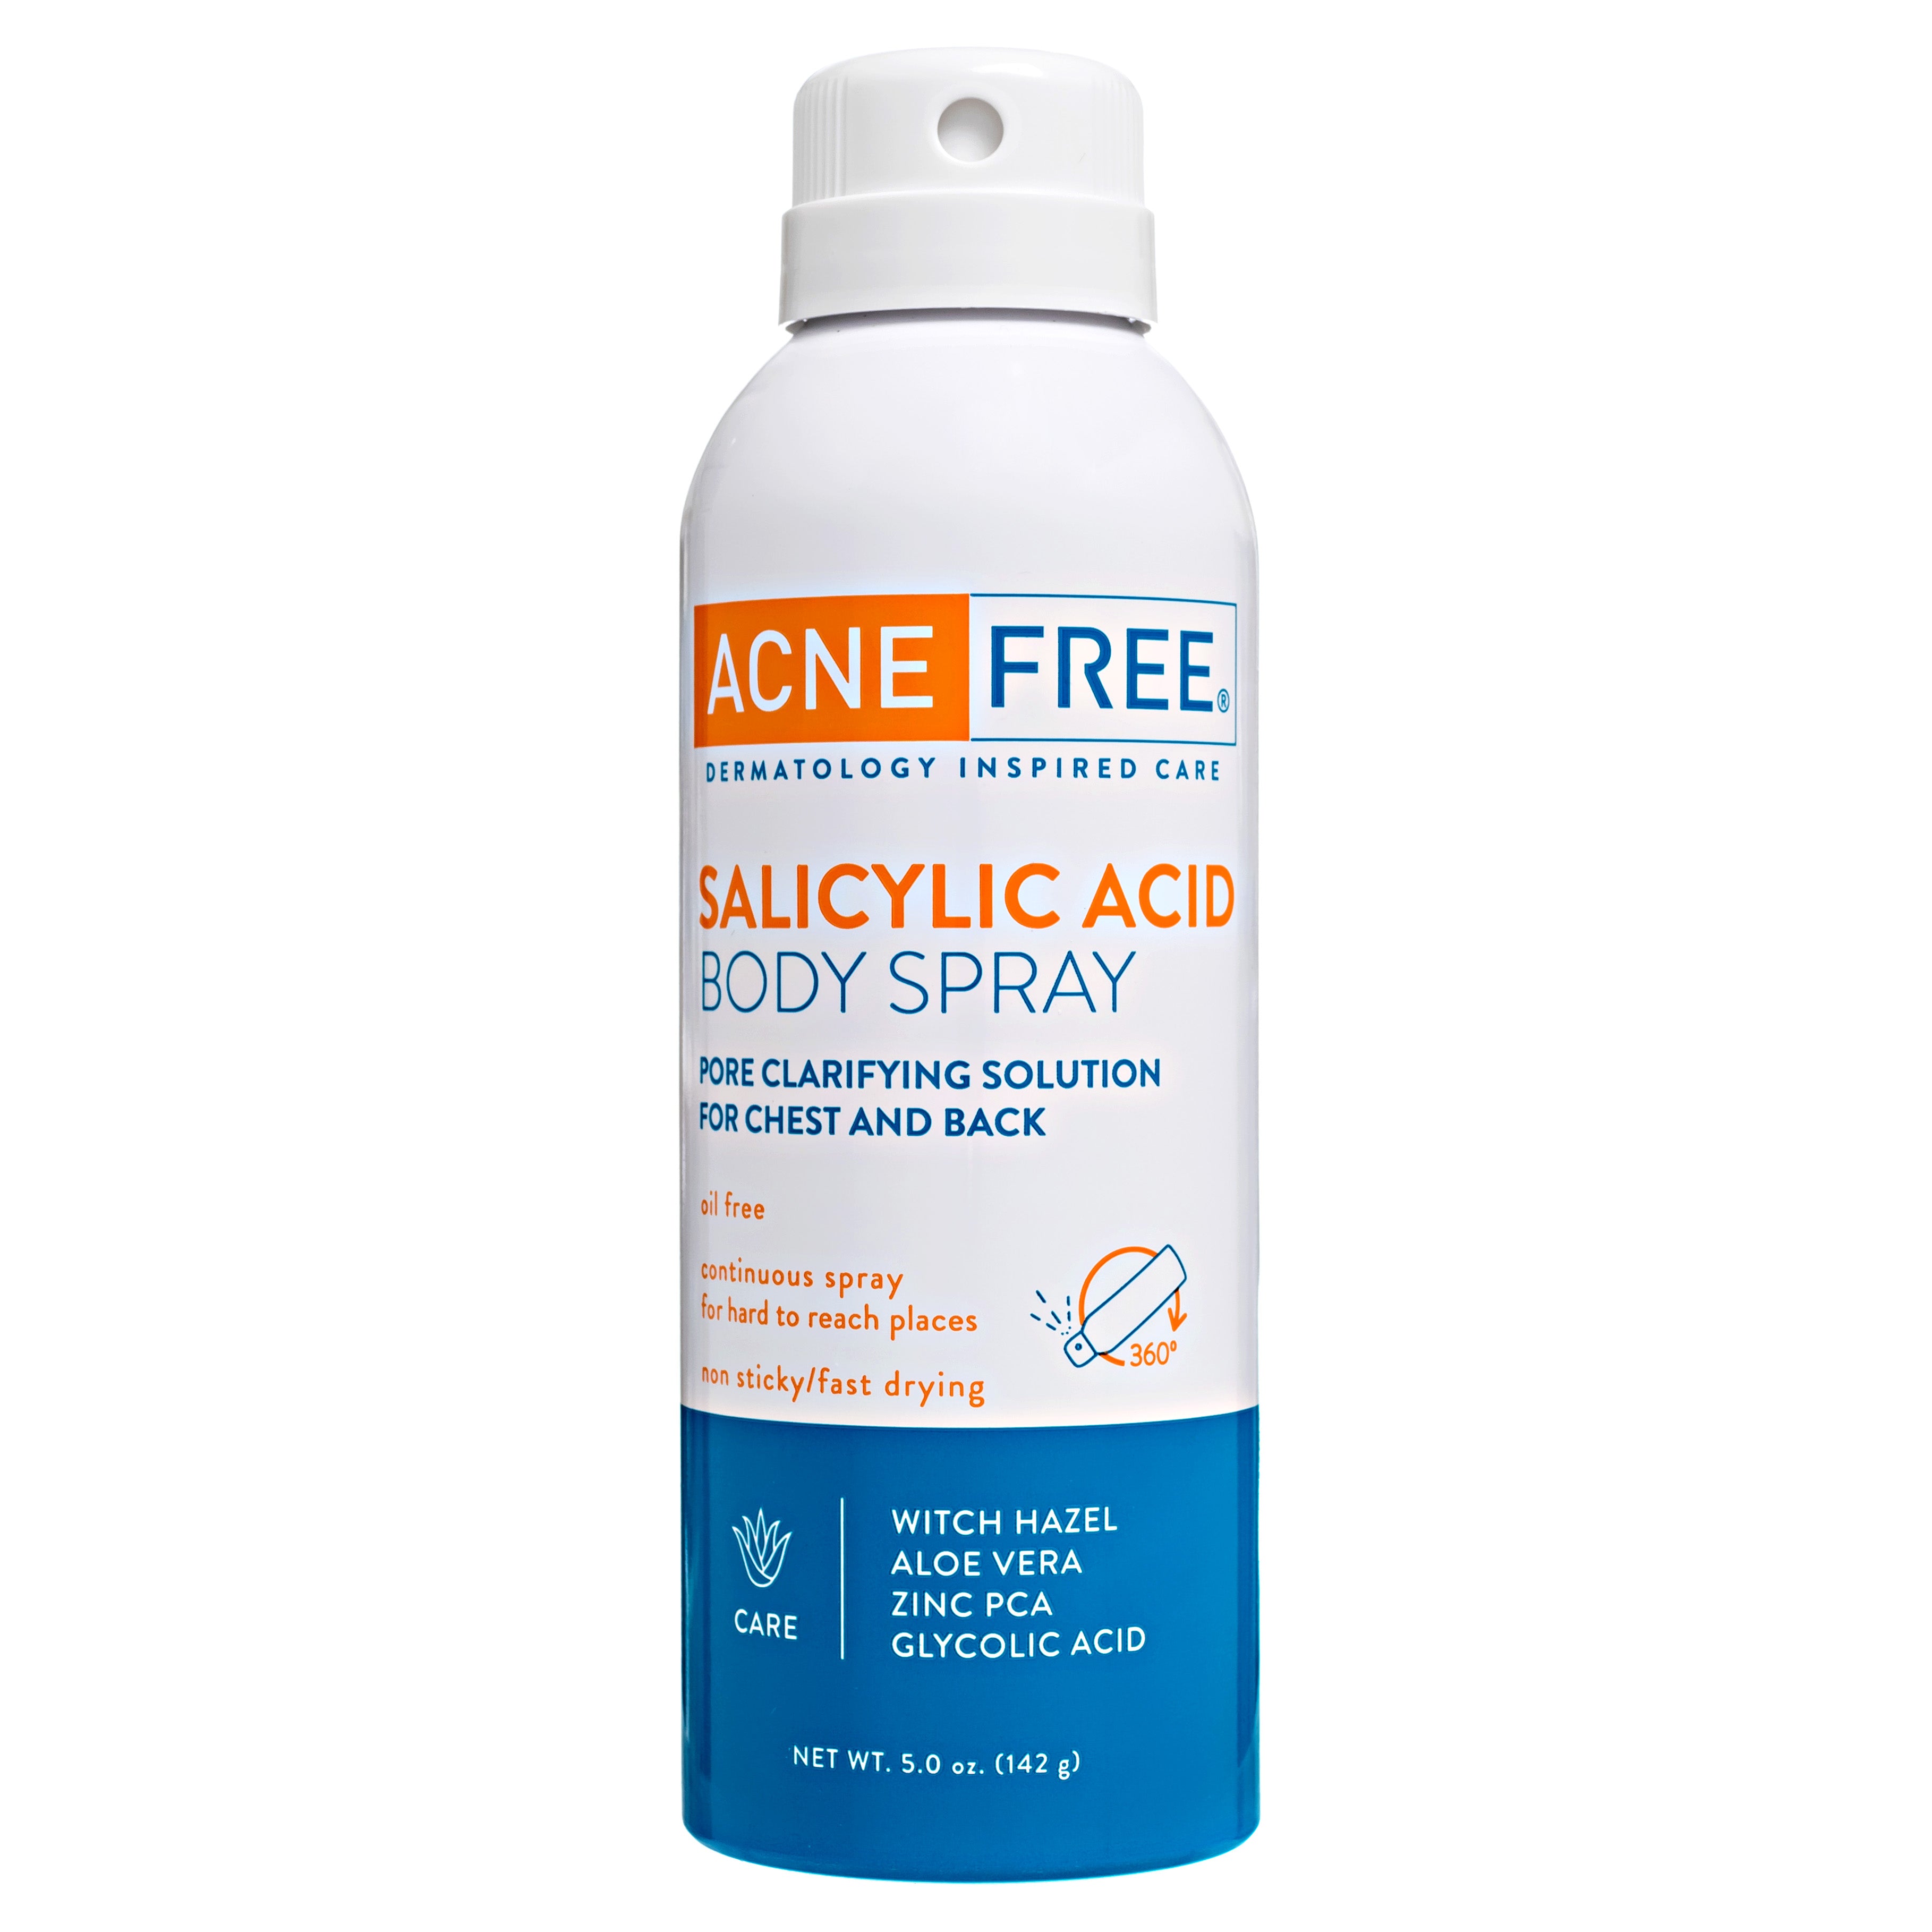 Salicylic Acid Body Spray